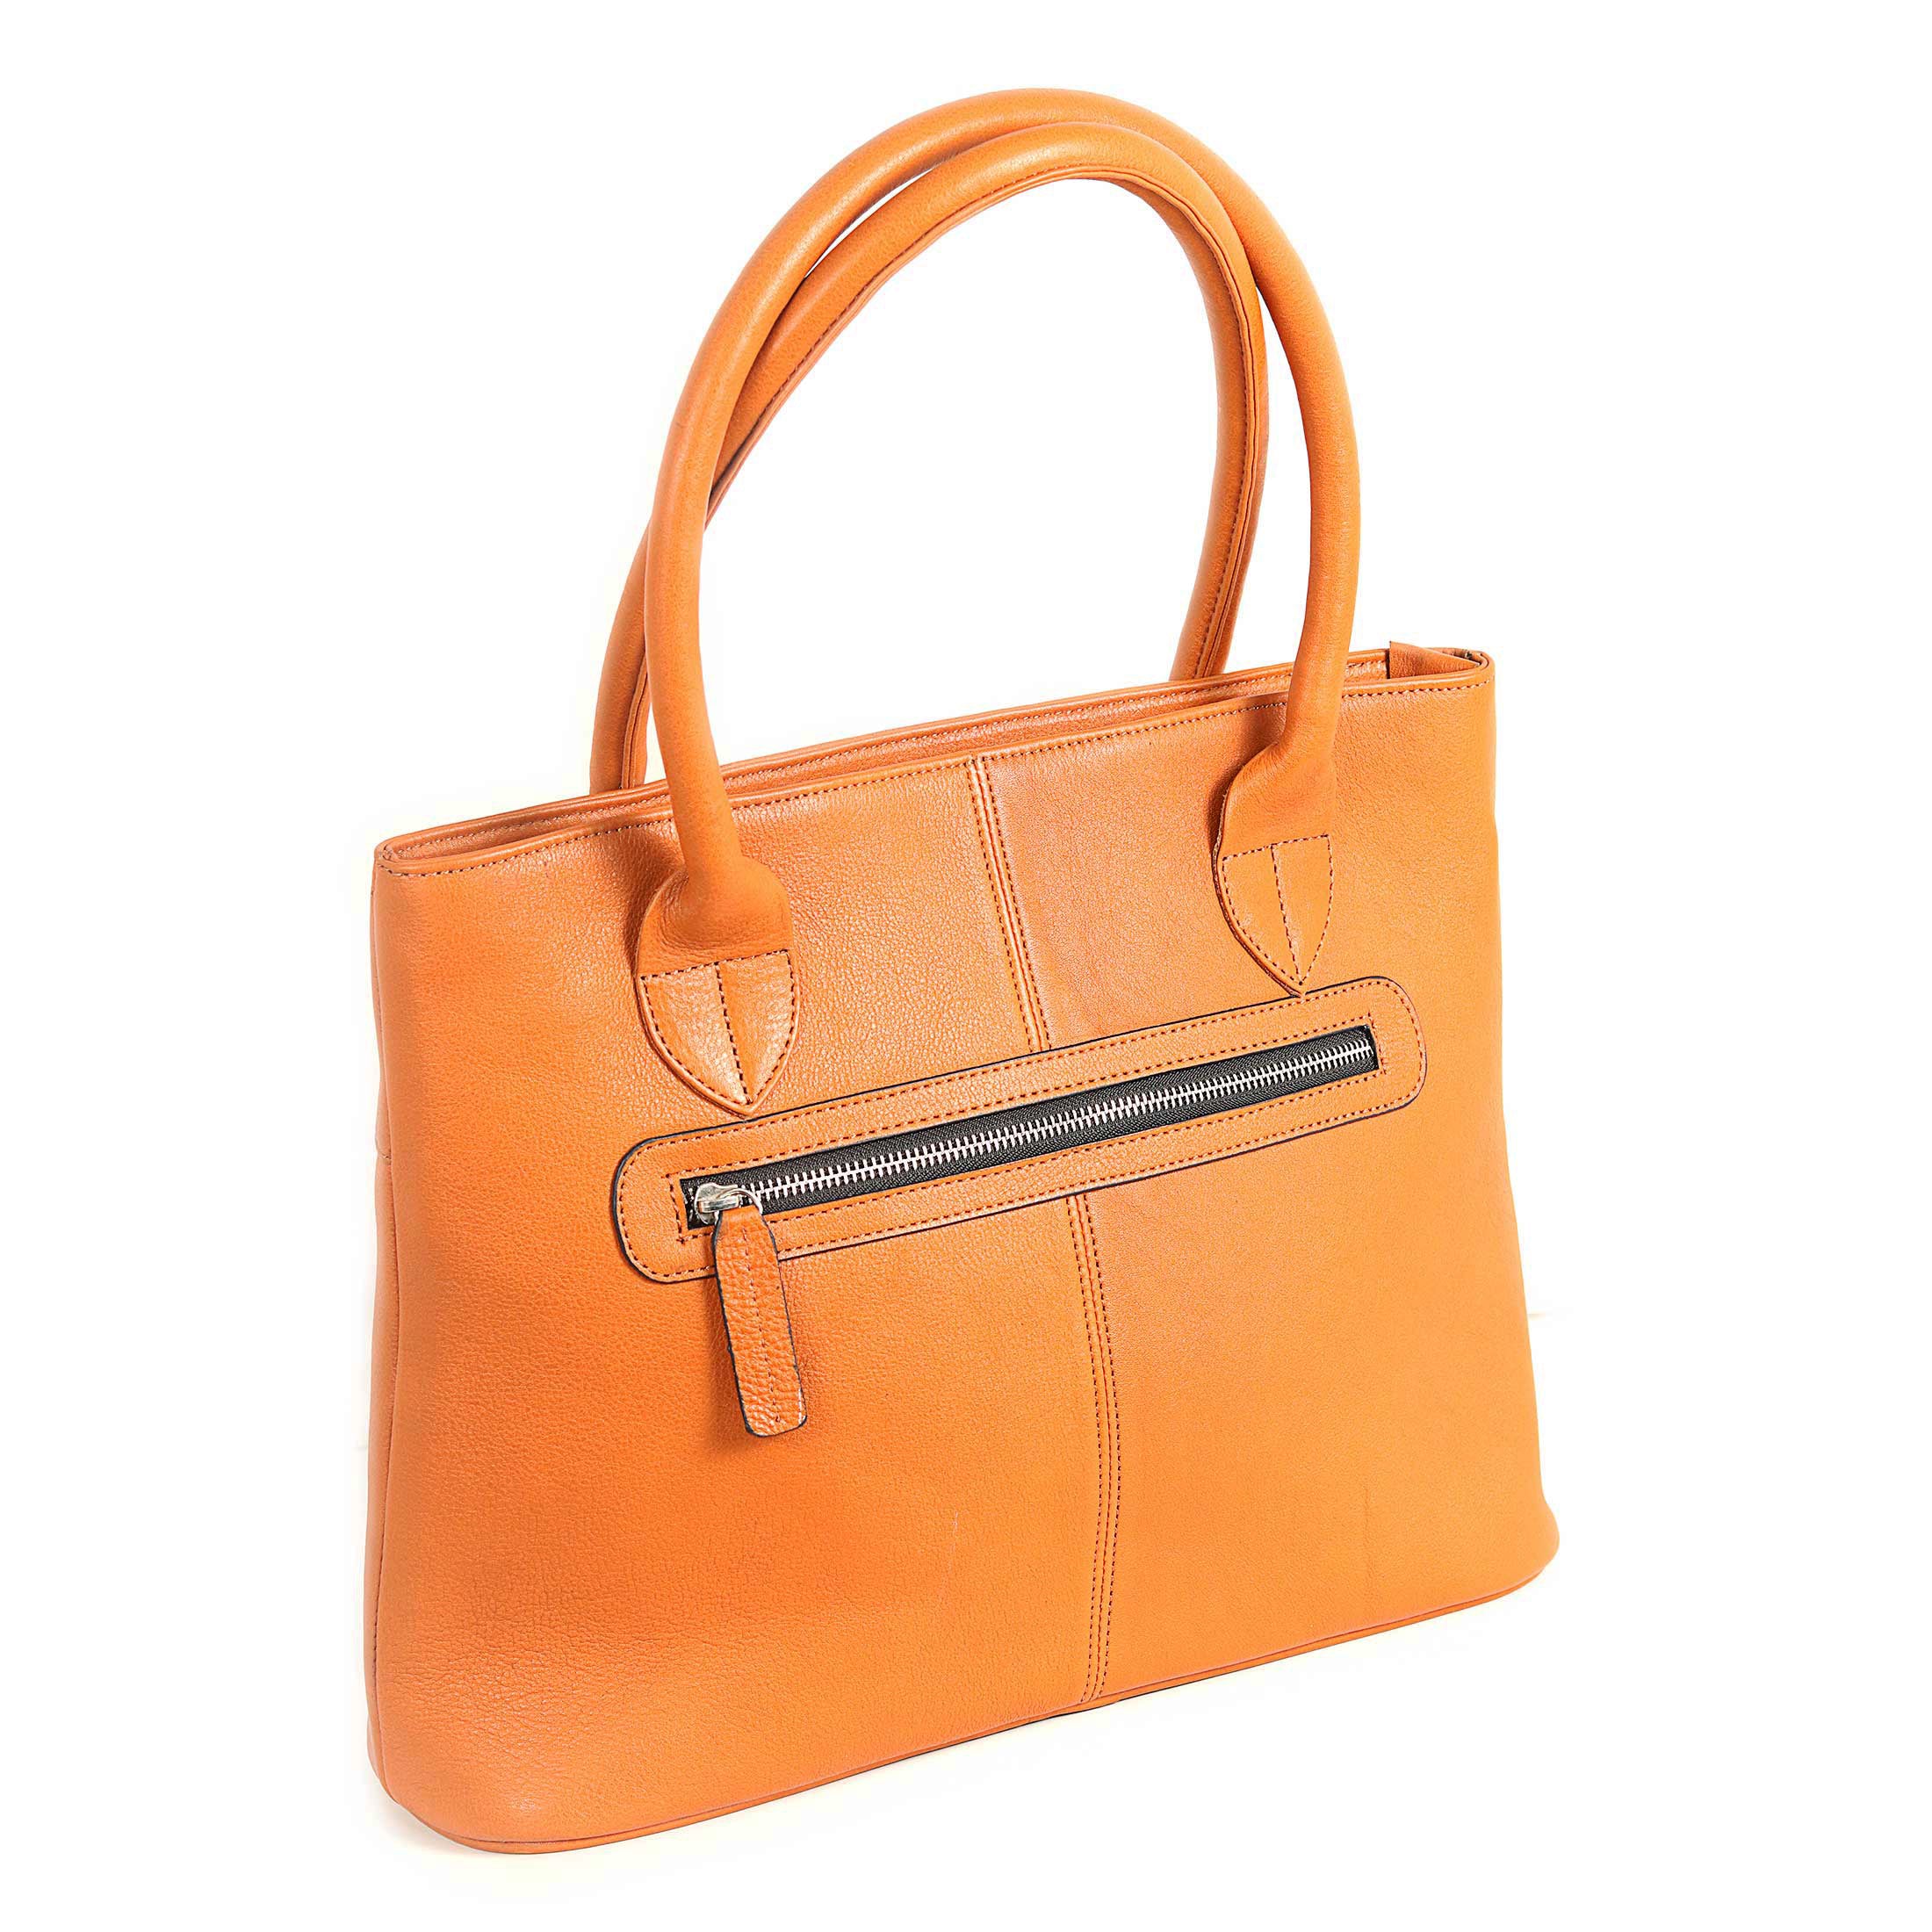 Zays Premium Leather Fashionable Ladies Tote Bag (Orange) - ZAYSBG12